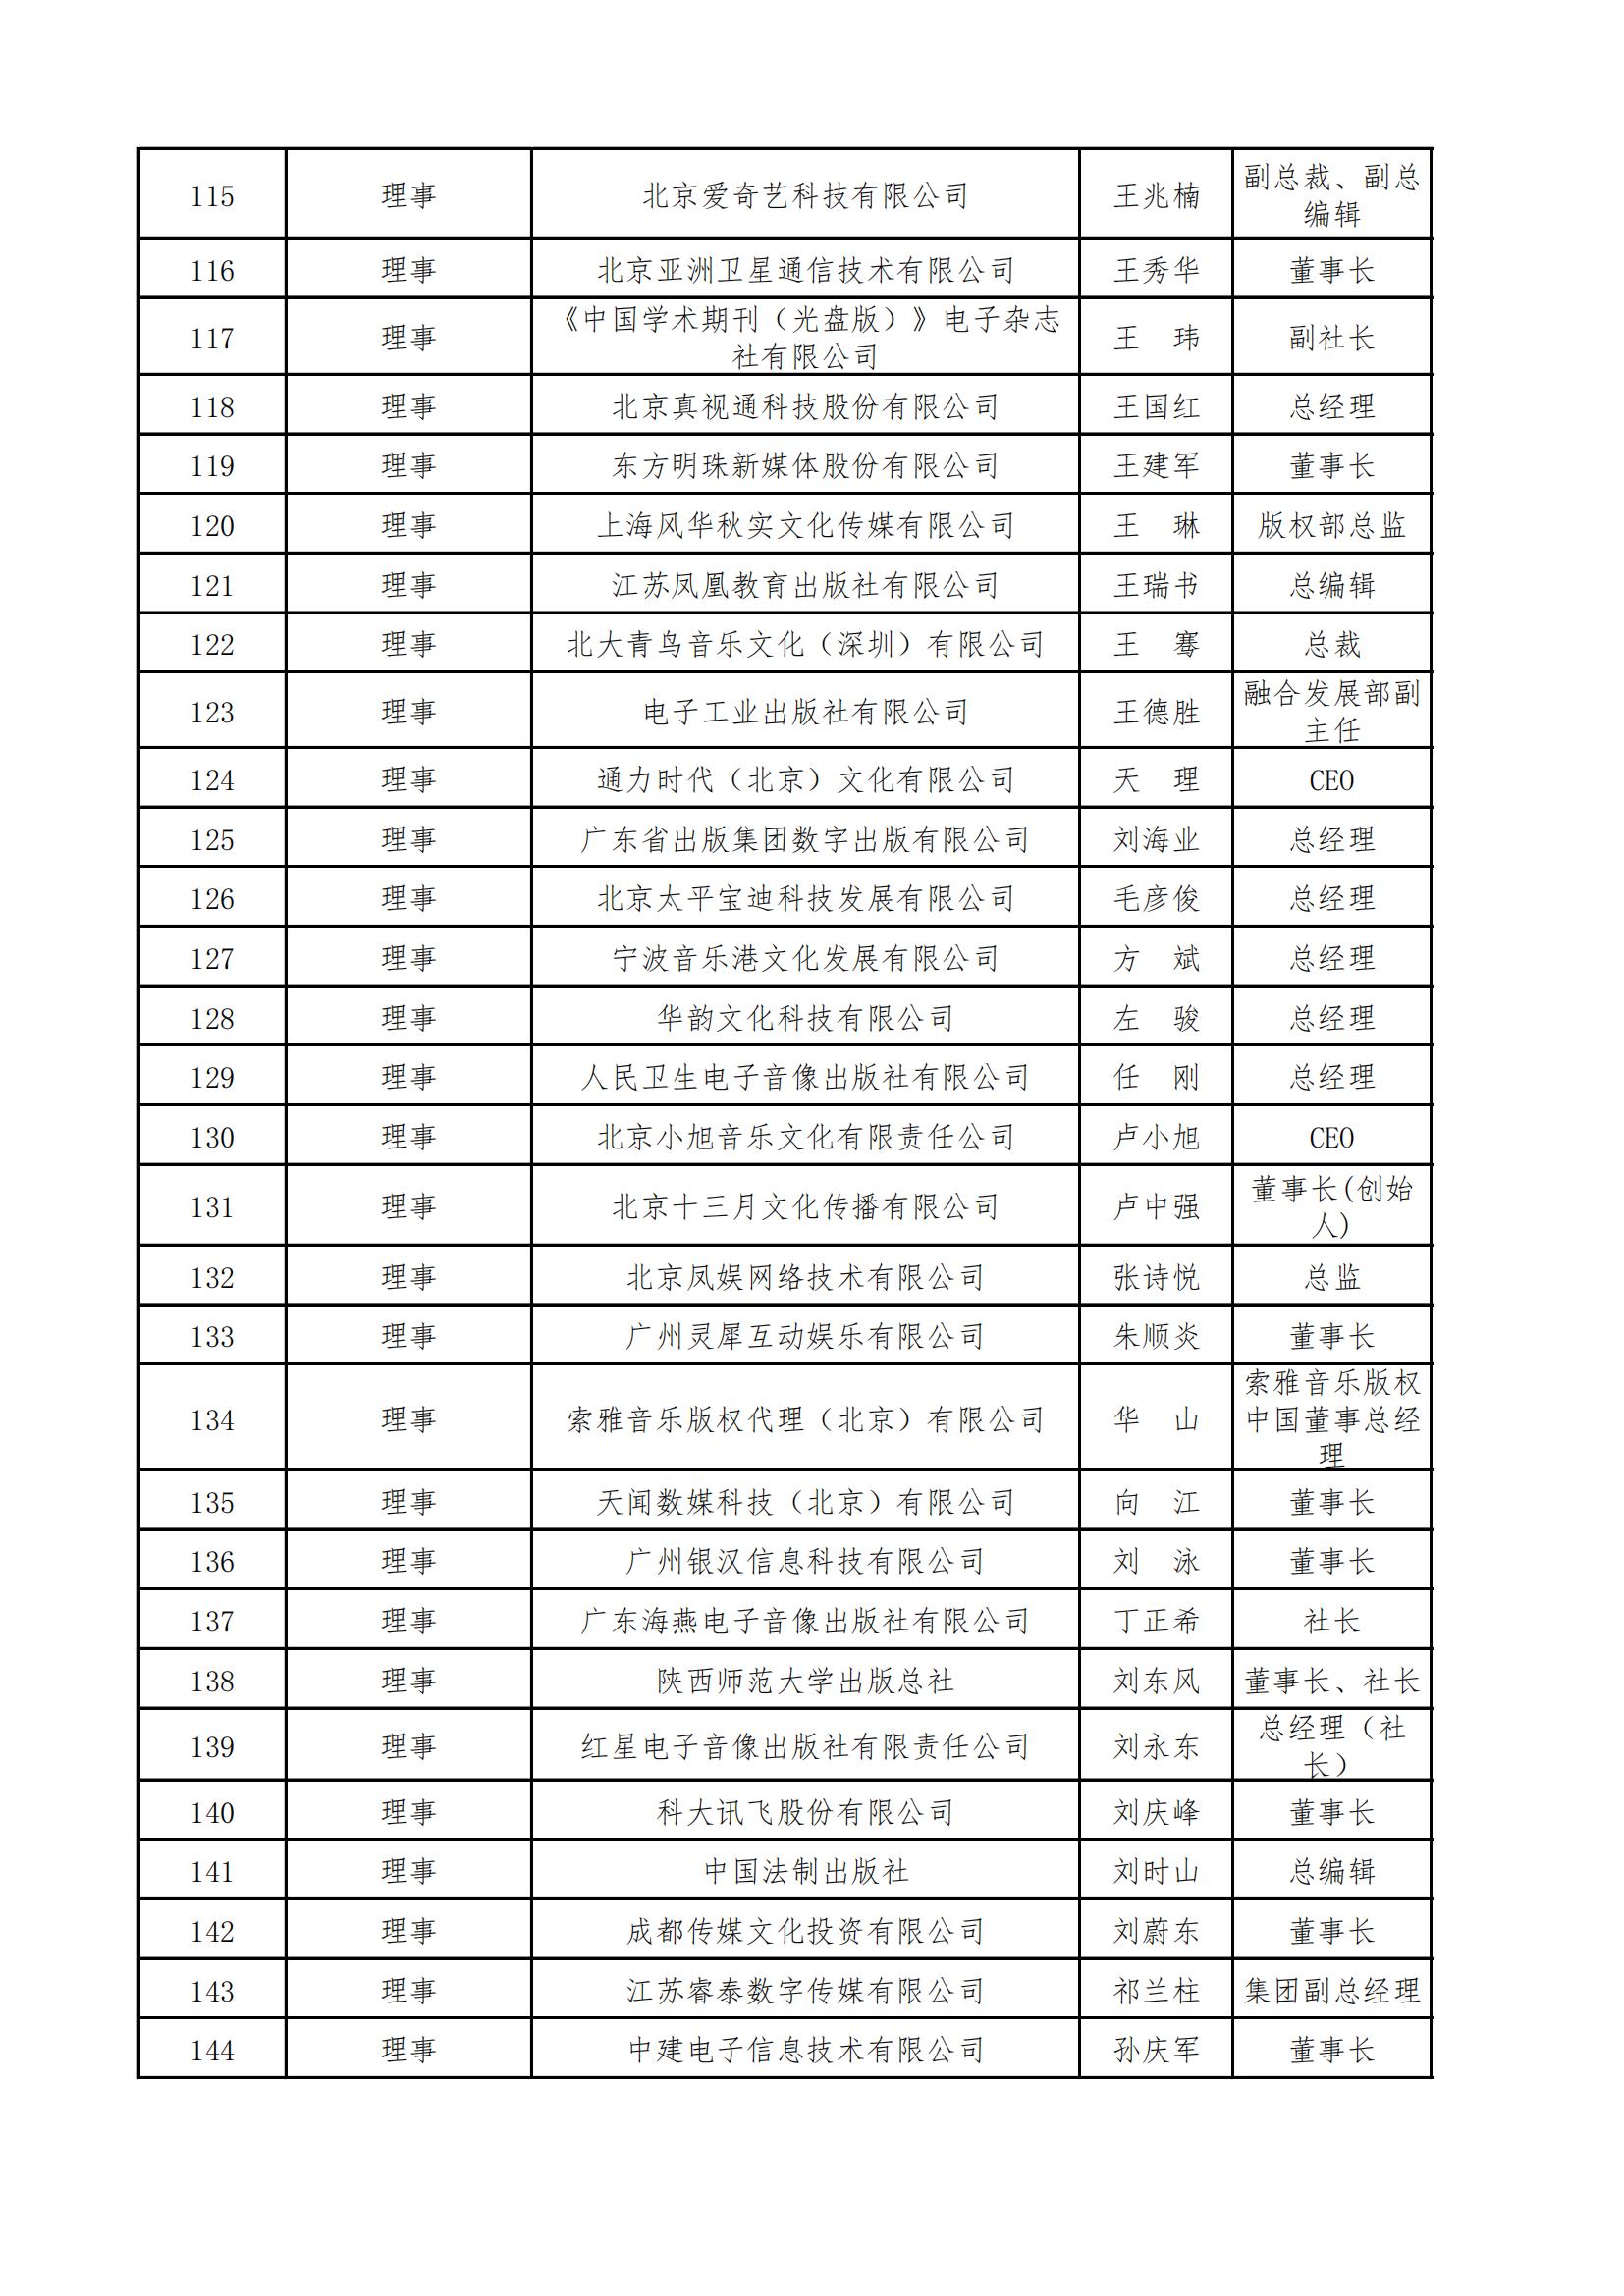 中国音像与数字出版协会第五届理事会名录_04.jpg